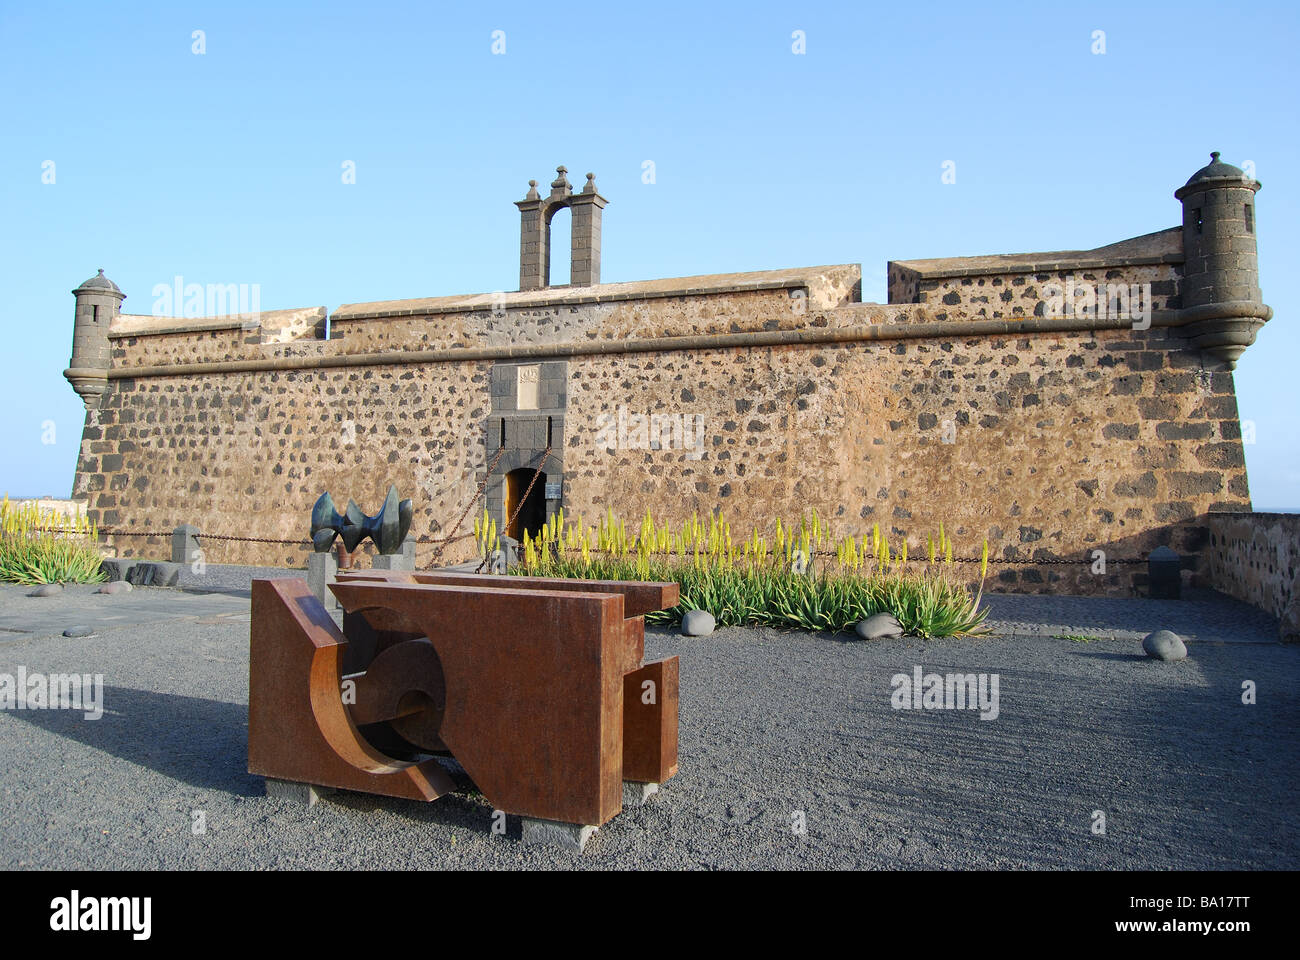 Castillo de San Jose, Arrecife, Lanzarote, Kanarische Inseln, Spanien Stockfoto